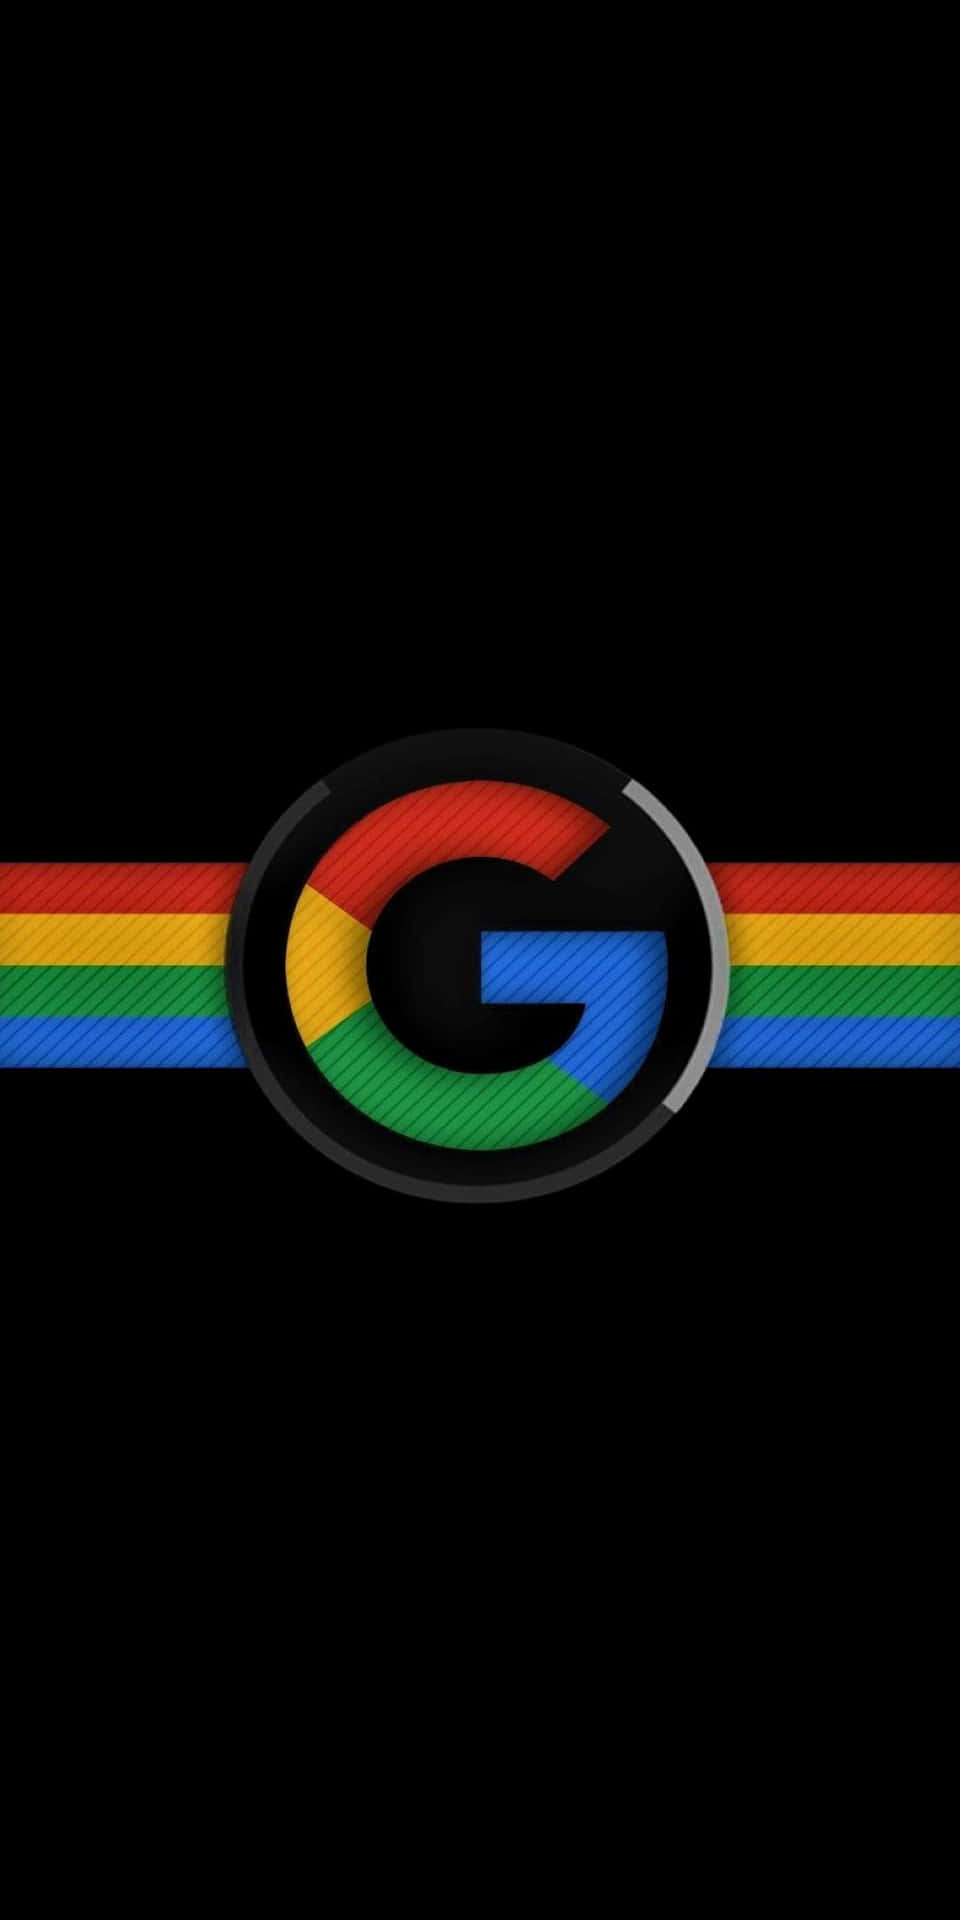 Sfondologo Google Pixel 3 Amoled